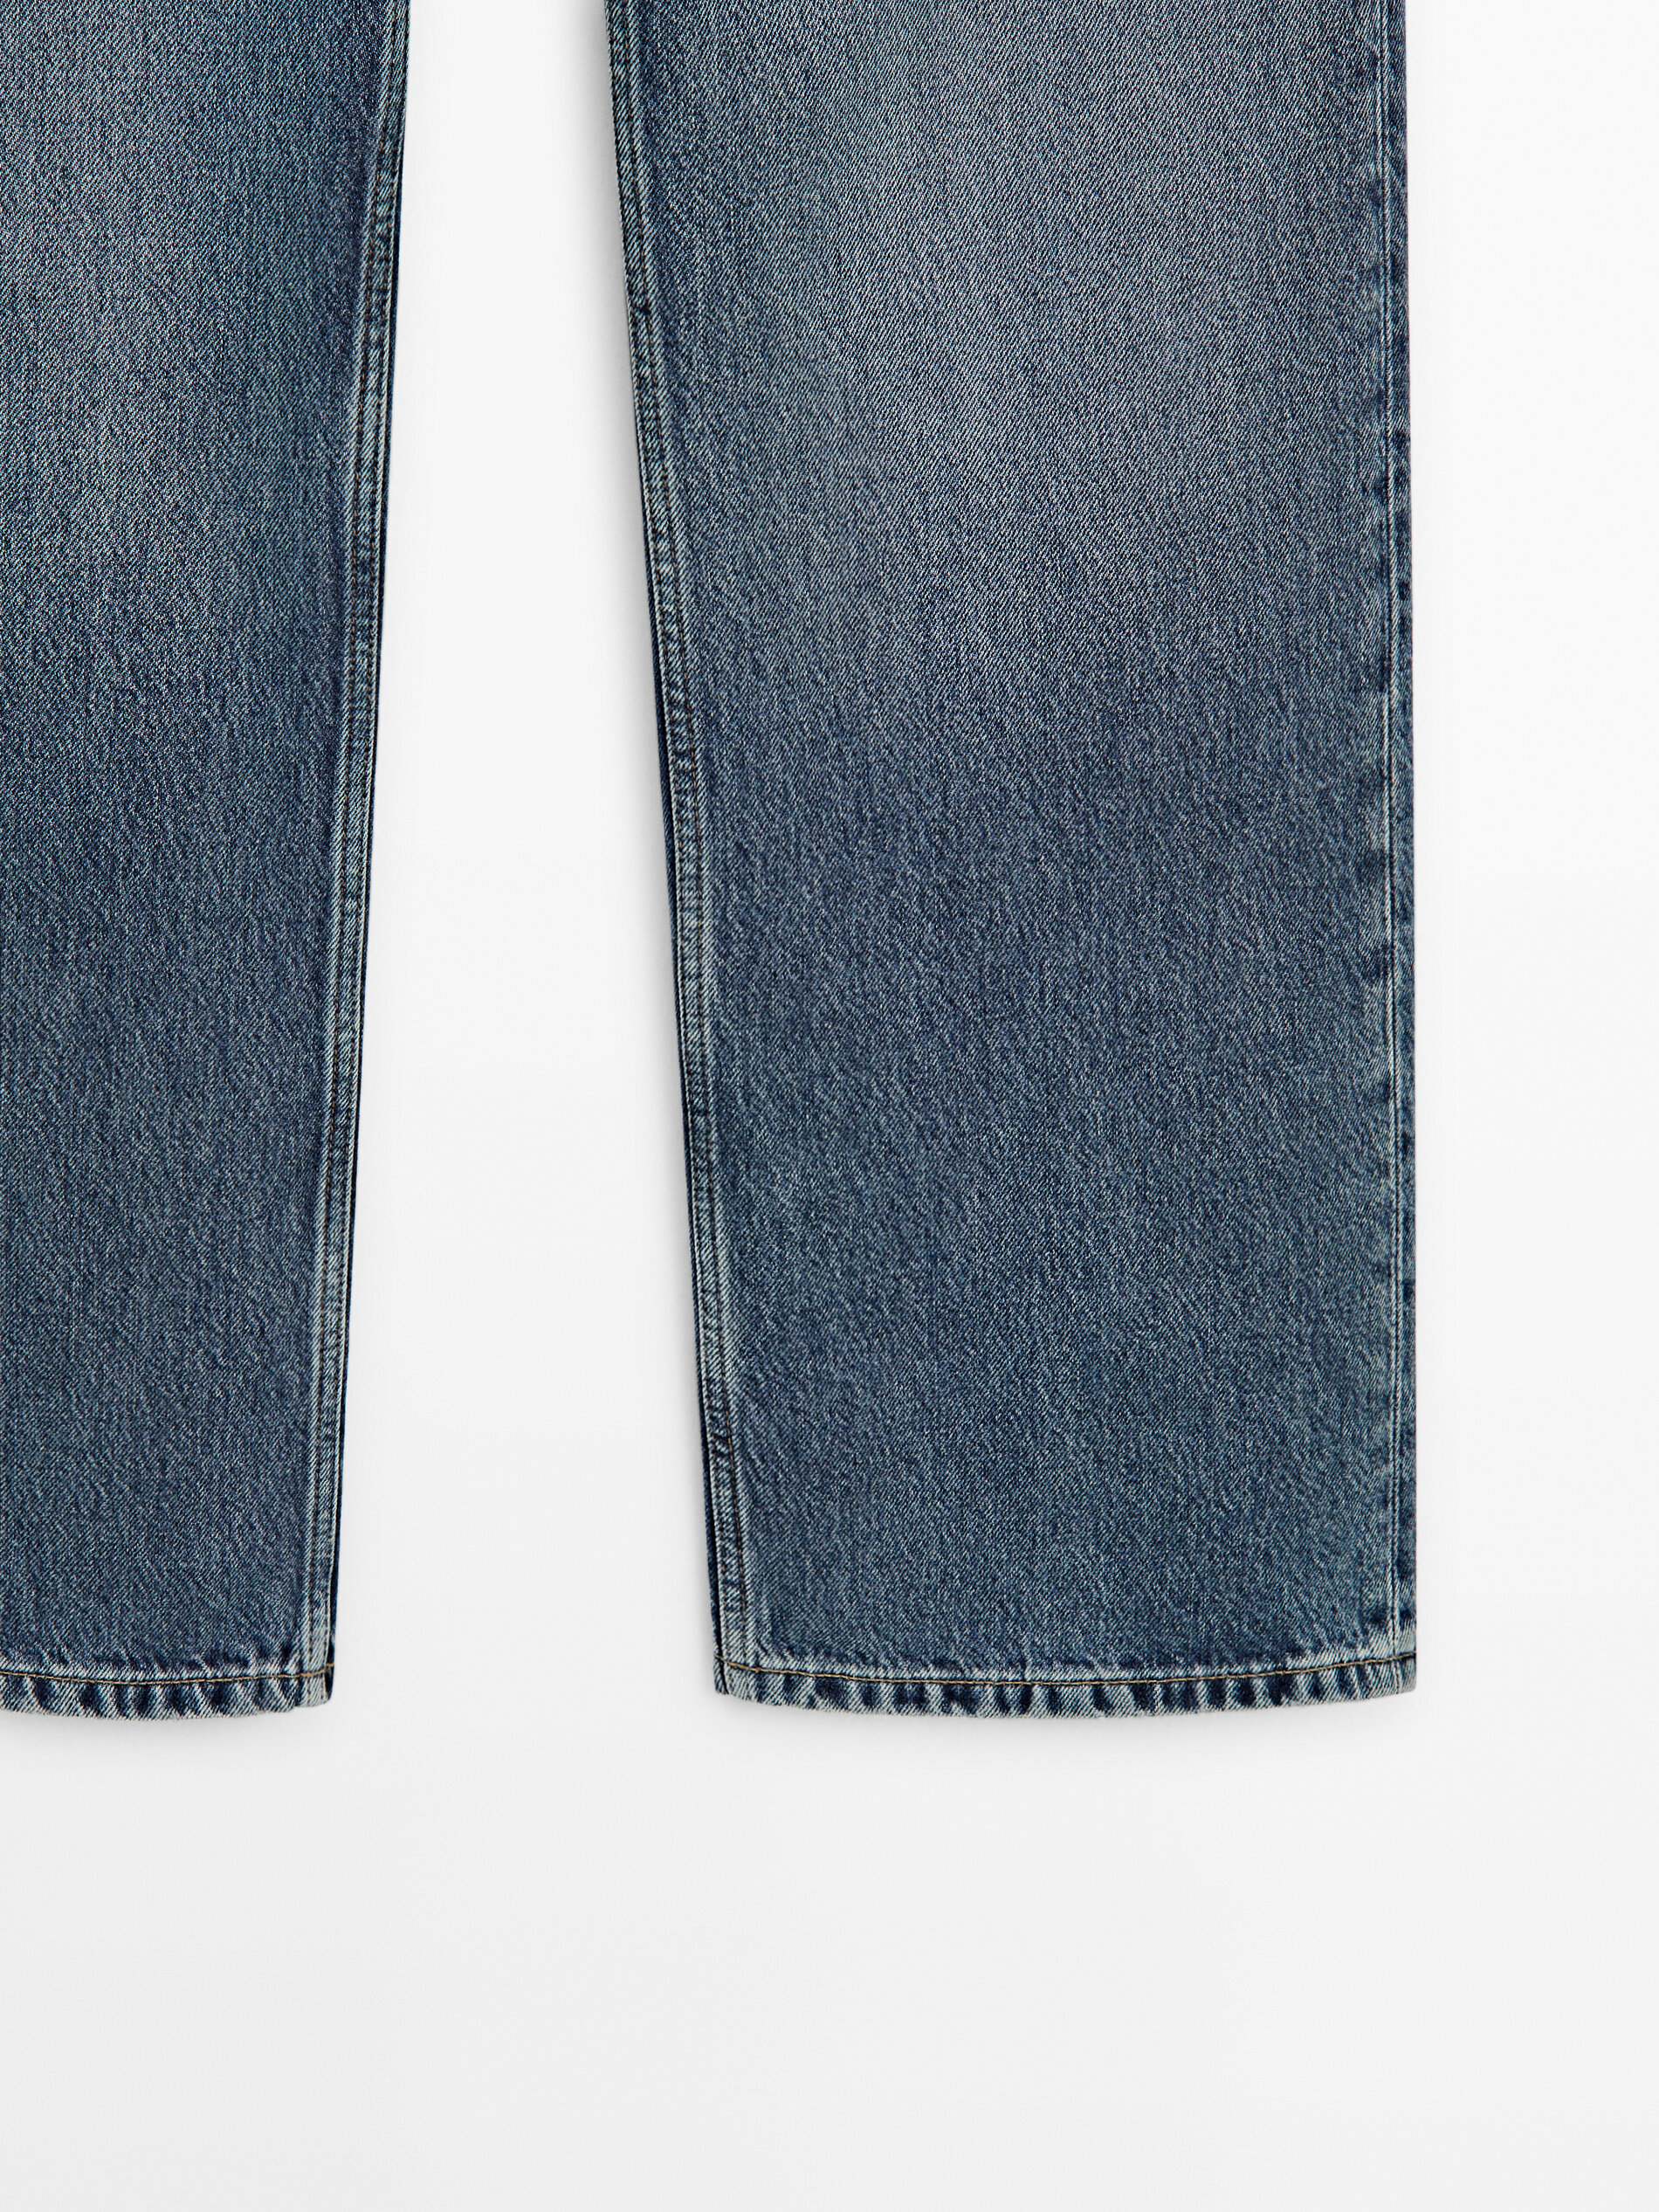 Jeans tiro bajo corte recto